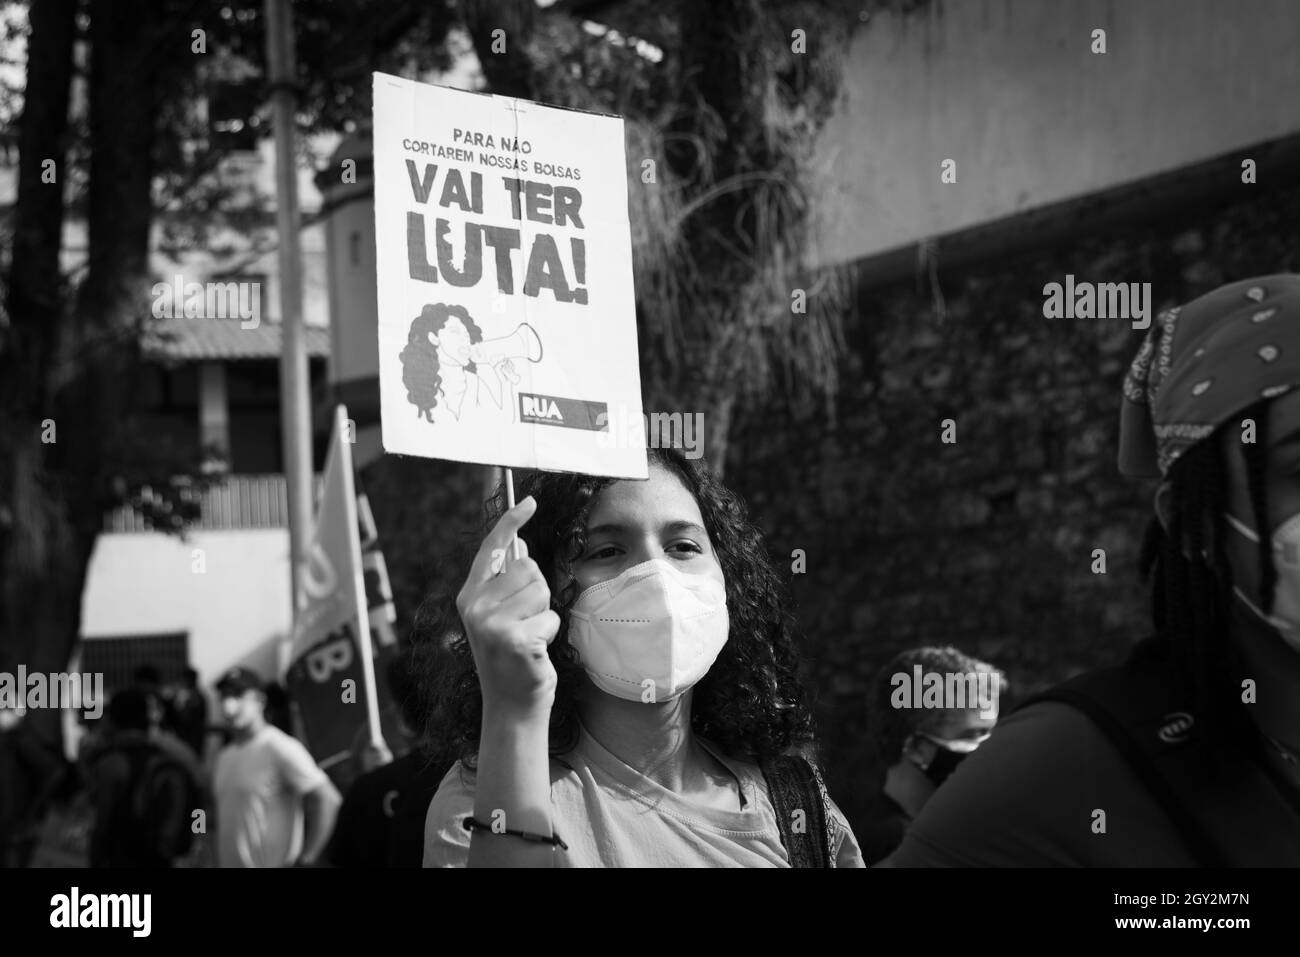 Salvador, Bahia, Brésil - 19 juin 2021 : manifestations contre le gouvernement du président Jair Bolsonaro dans la ville de Salvador. Banque D'Images